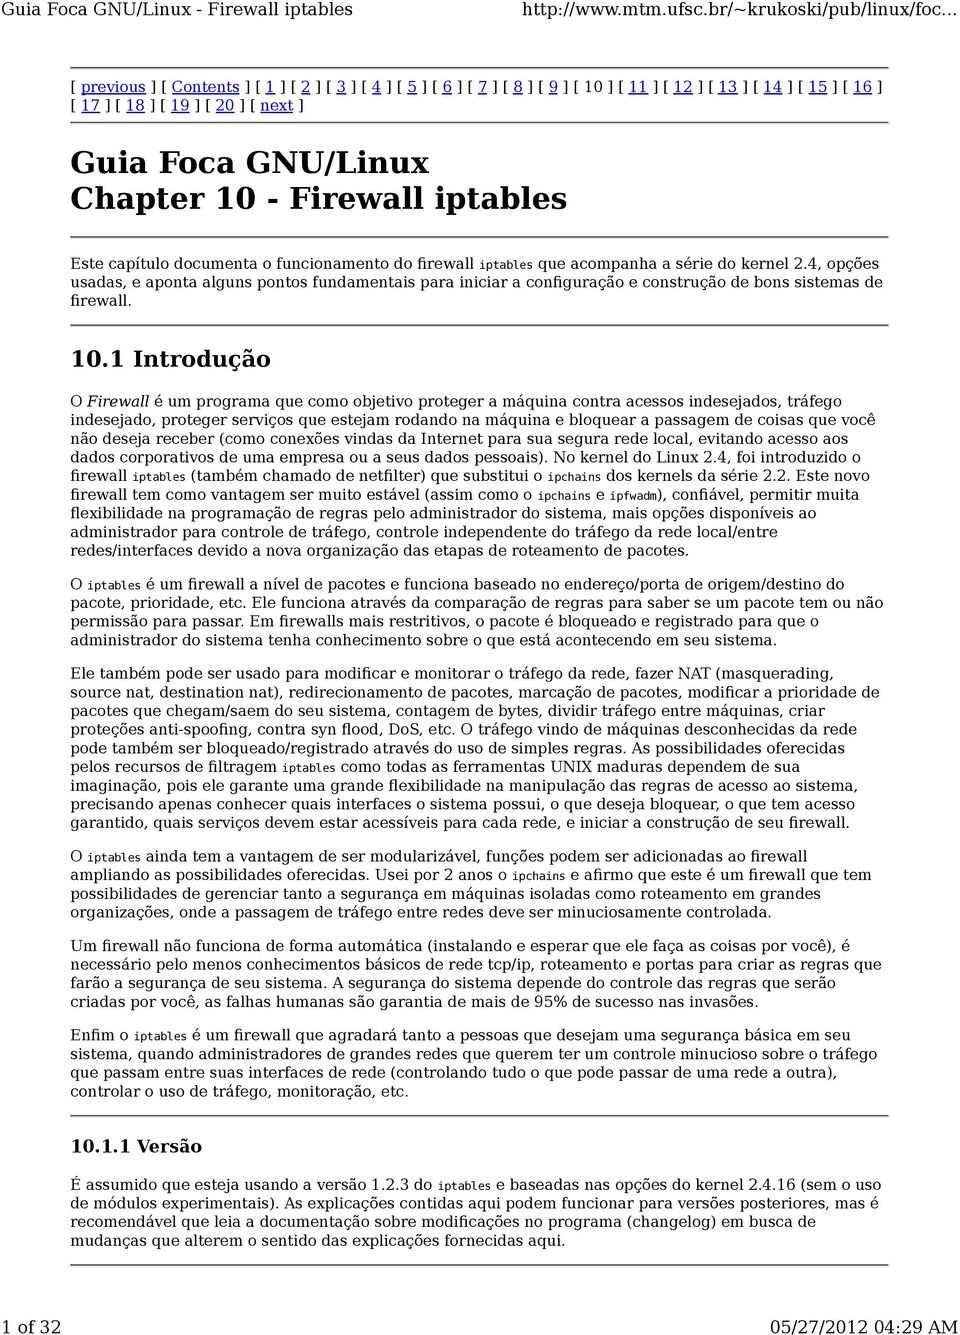 4, opções usadas, e aponta alguns pontos fundamentais para iniciar a configuração e construção de bons sistemas de firewall. 10.